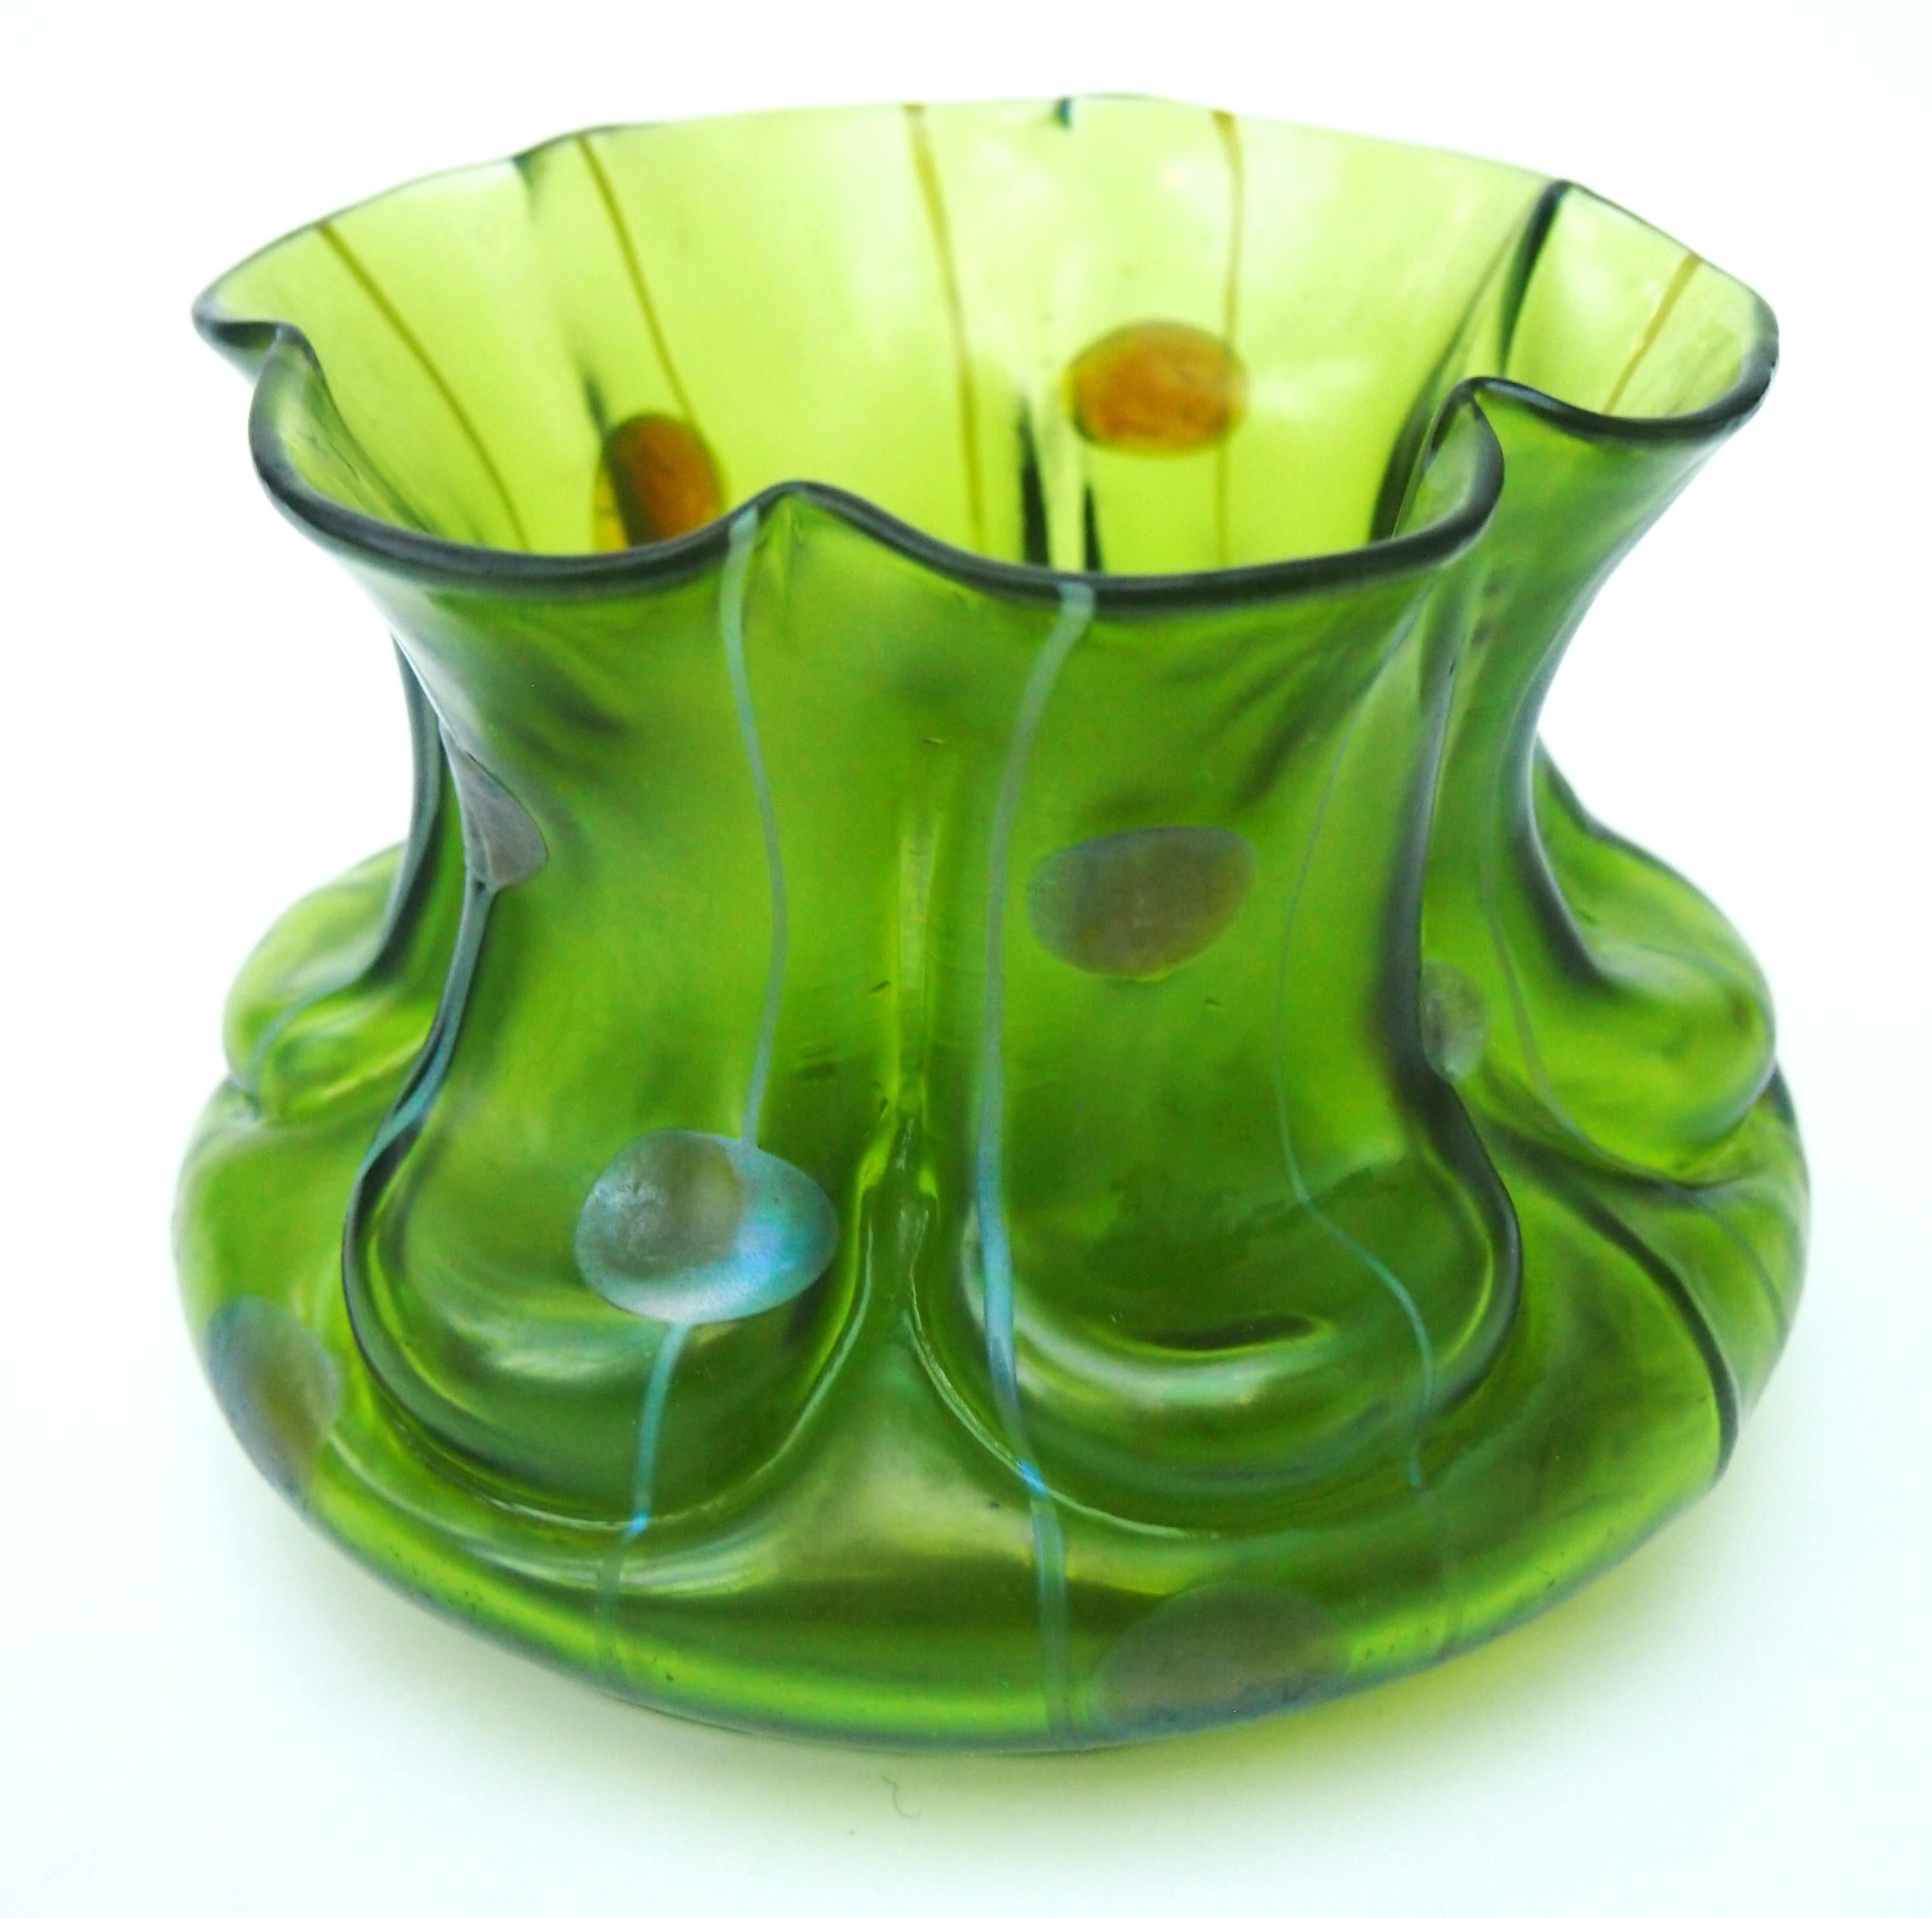 Un vase classique en verre de Kralik Striefen et Flecken vers 1900, un vase de forme profonde avec le motif classique de rayures répétées et de taches circulaires en argent sur verre vert foncé. Ce modèle particulier a été utilisé plus tard par